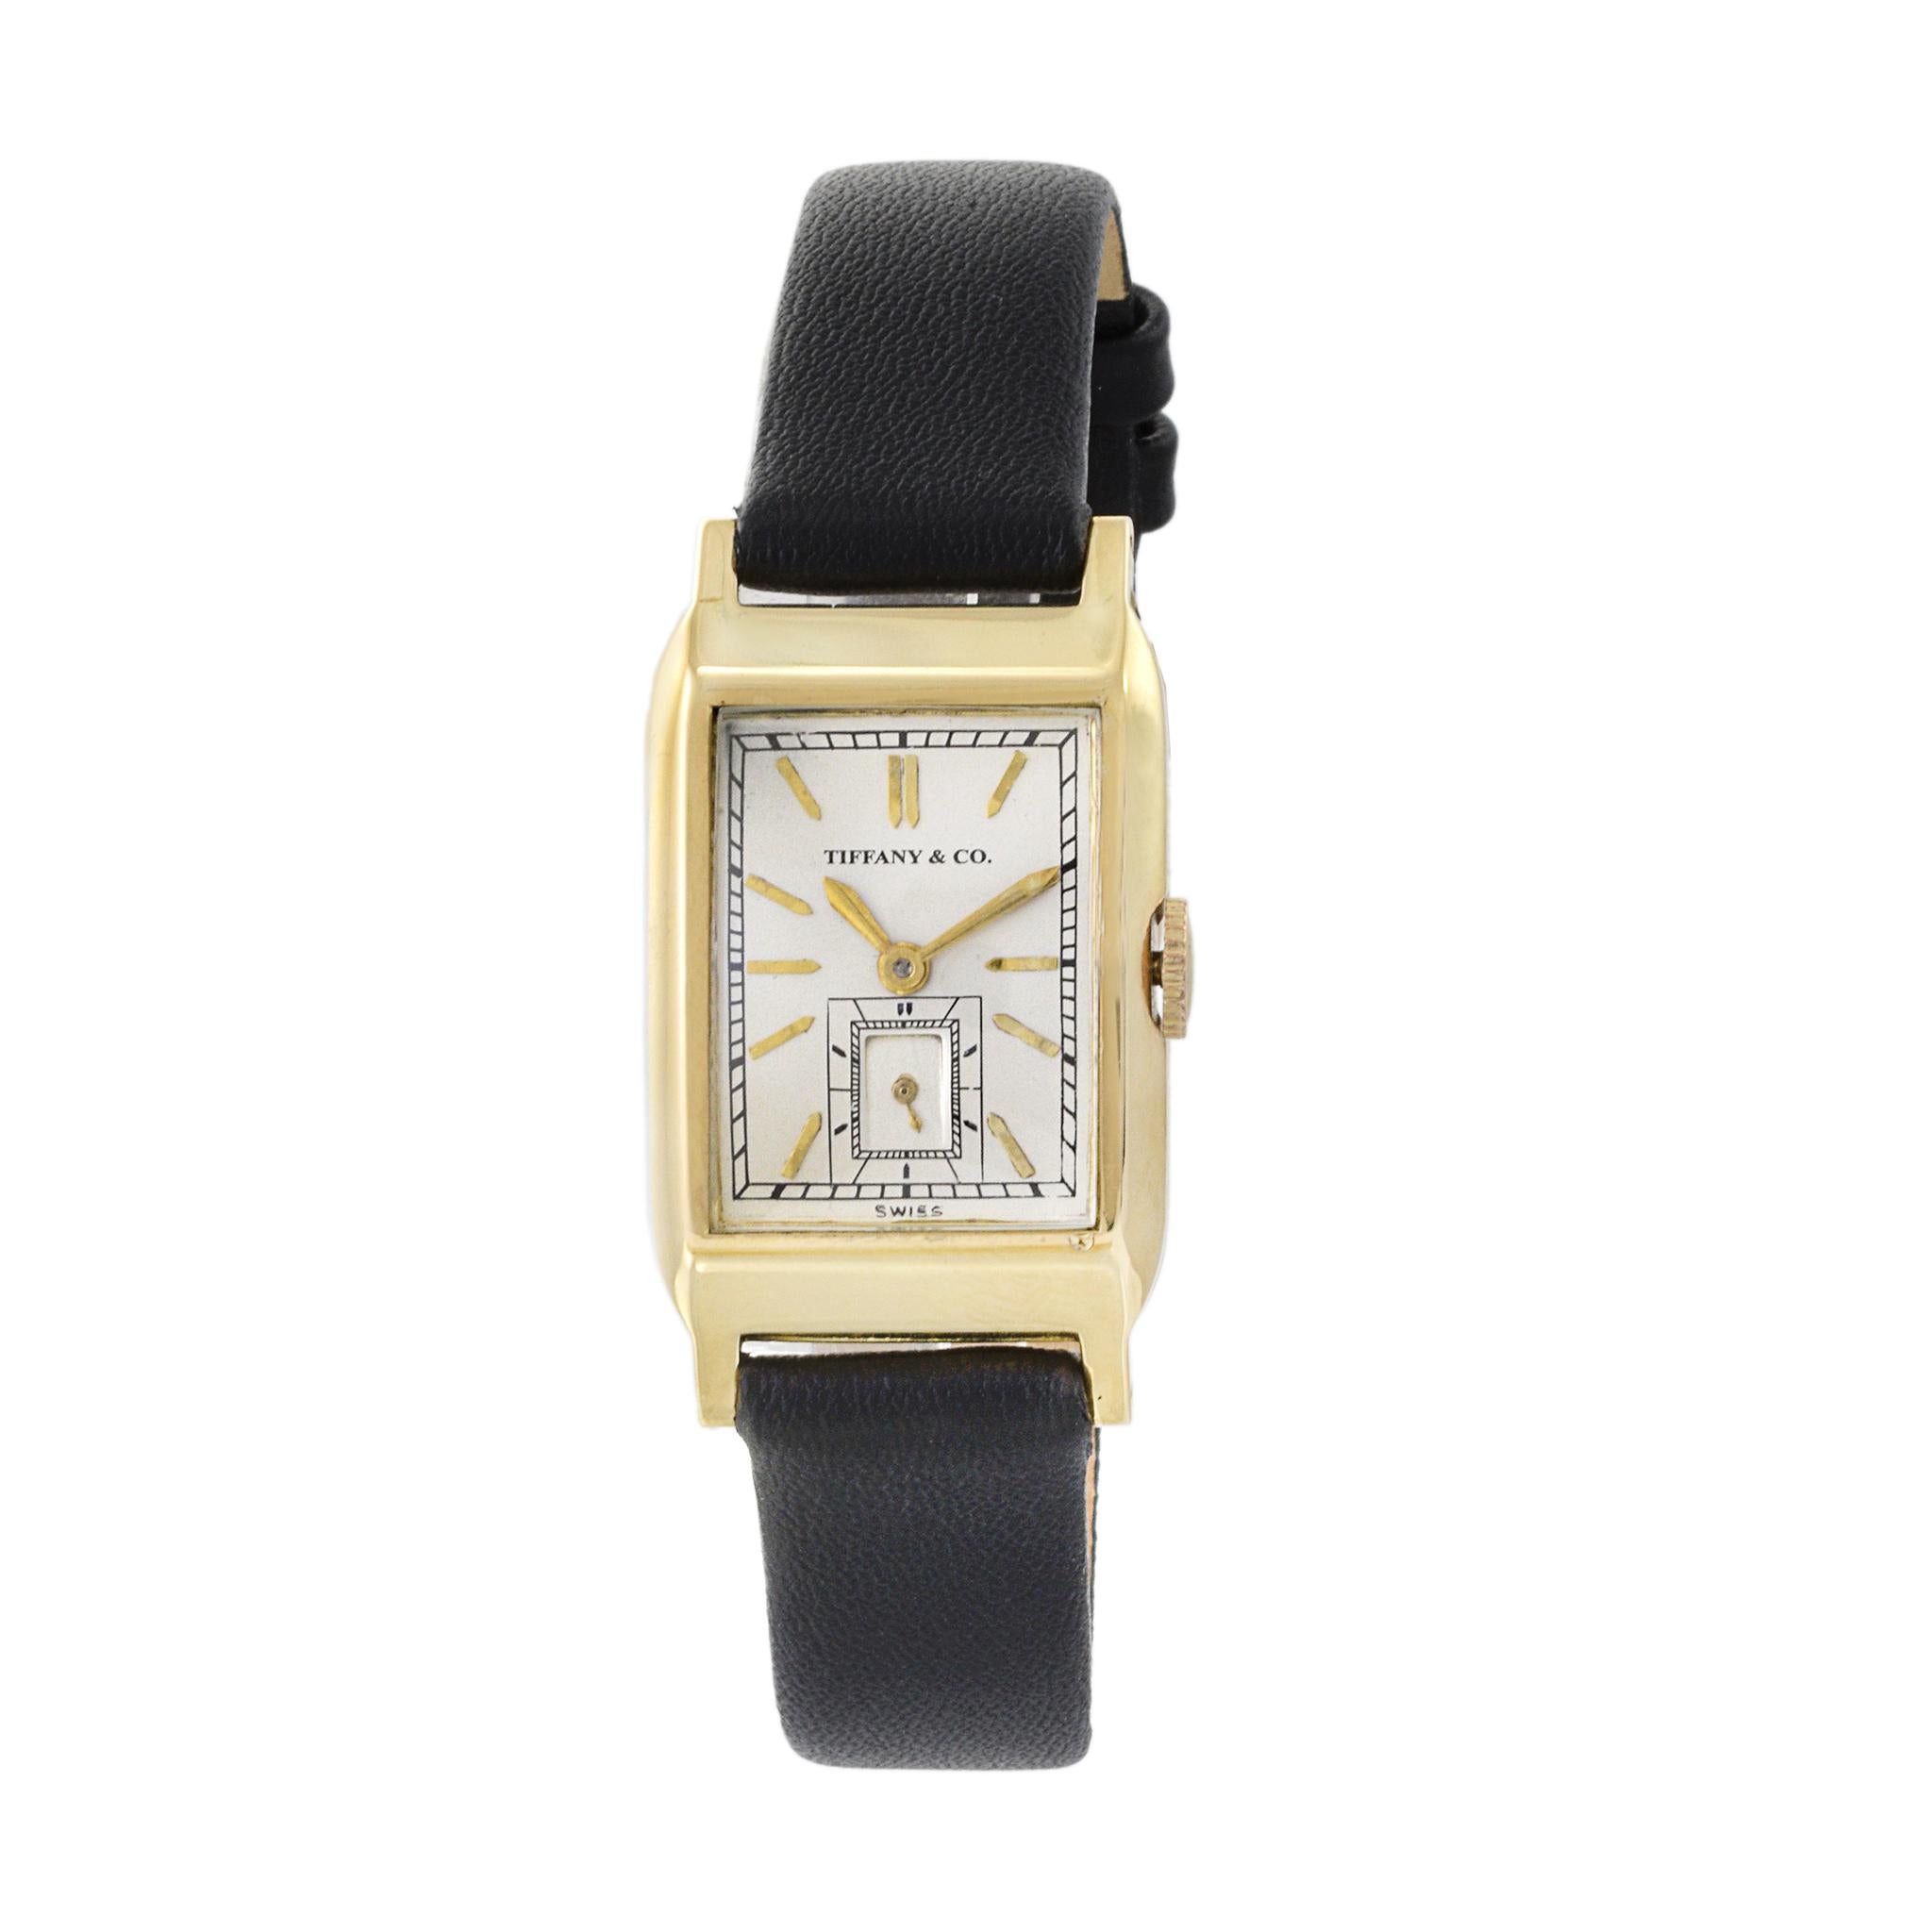 Il s'agit d'une élégante pièce de Tiffany & Co. datant des années 1930. Montre Tank en or 14K. Cette montre a été produite par Movado à l'apogée de son histoire de fabricant de mouvements. Le boîtier mesure 21 mm x 37 mm (d'une corne à l'autre).